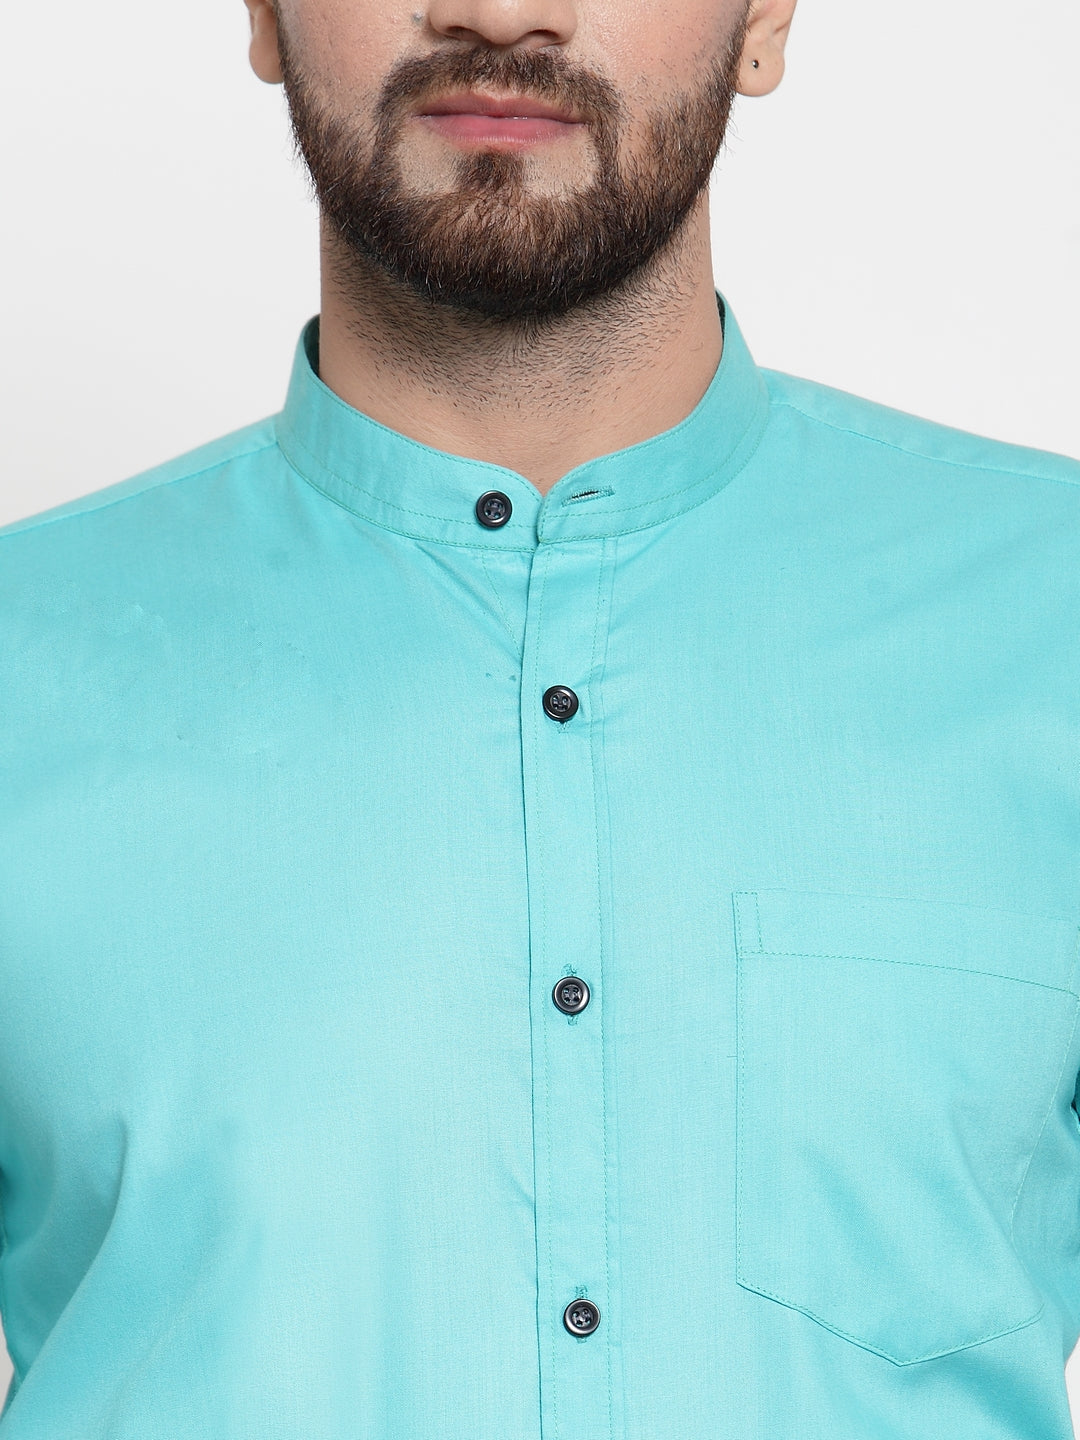 Men's Green Cotton Solid Mandarin Collar Formal Shirts ( SF 726Aqua ) - Jainish